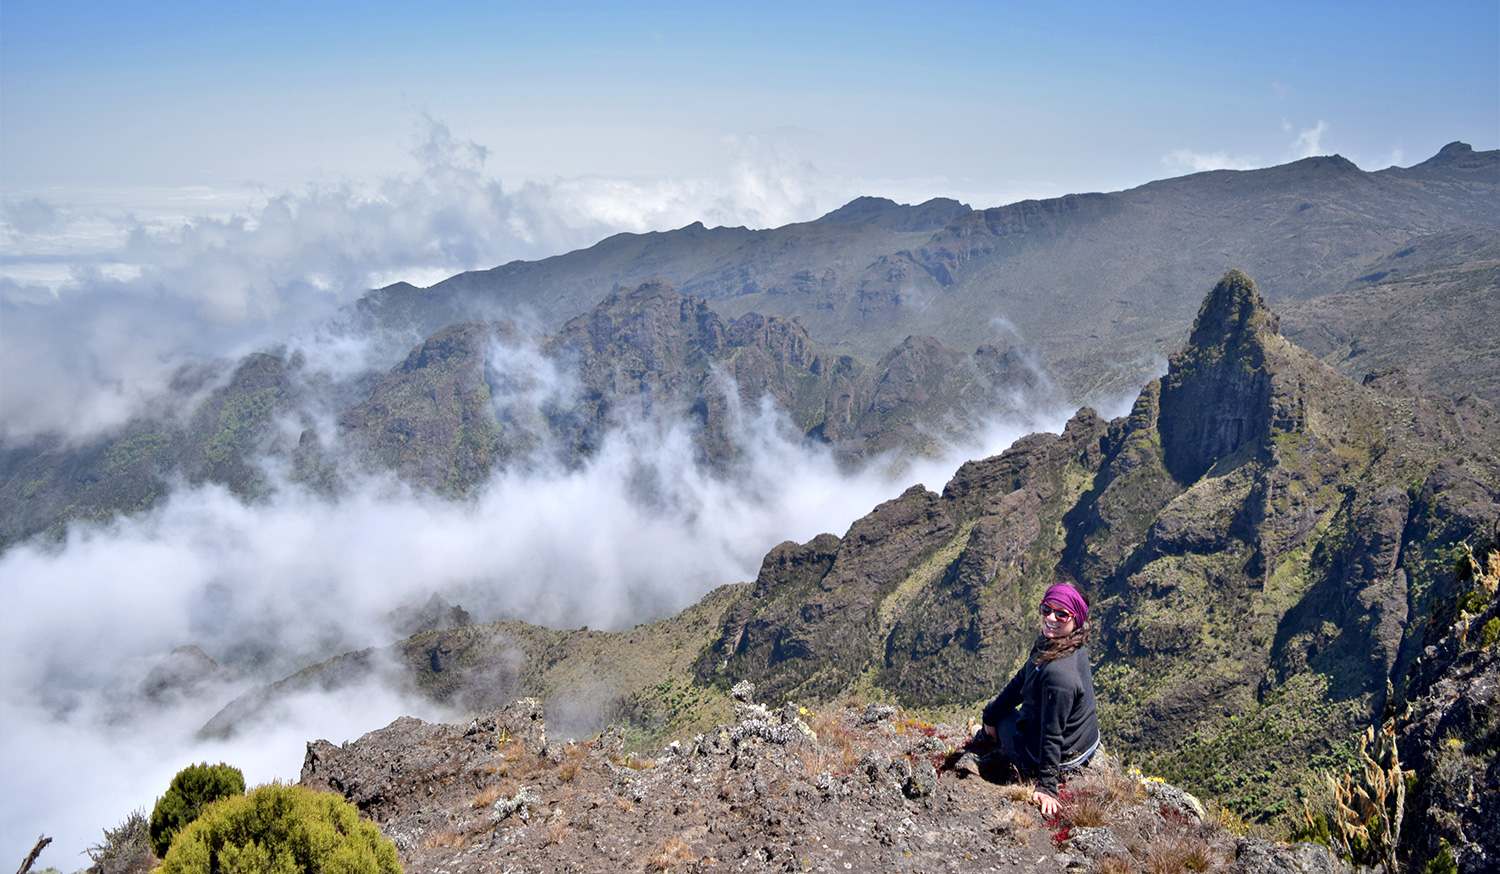 Tips for Climbing Kilimanjaro: take it slow